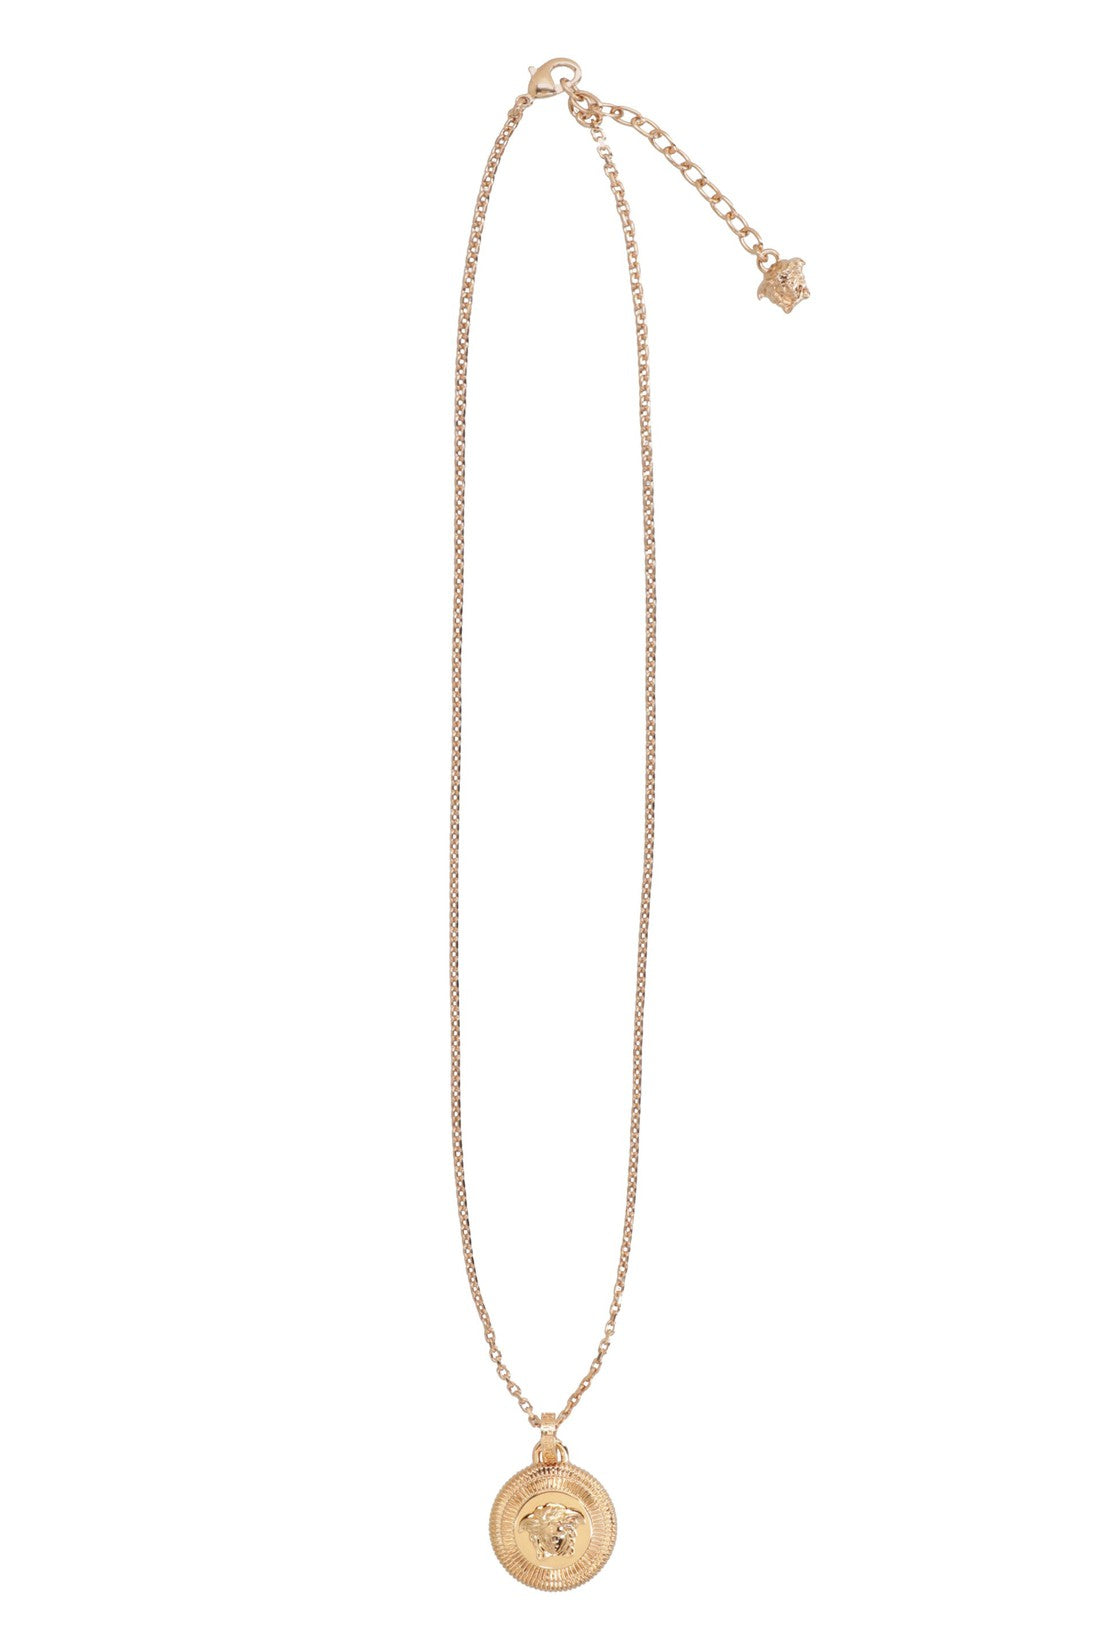 Versace-OUTLET-SALE-Gold-tone metal necklace-ARCHIVIST